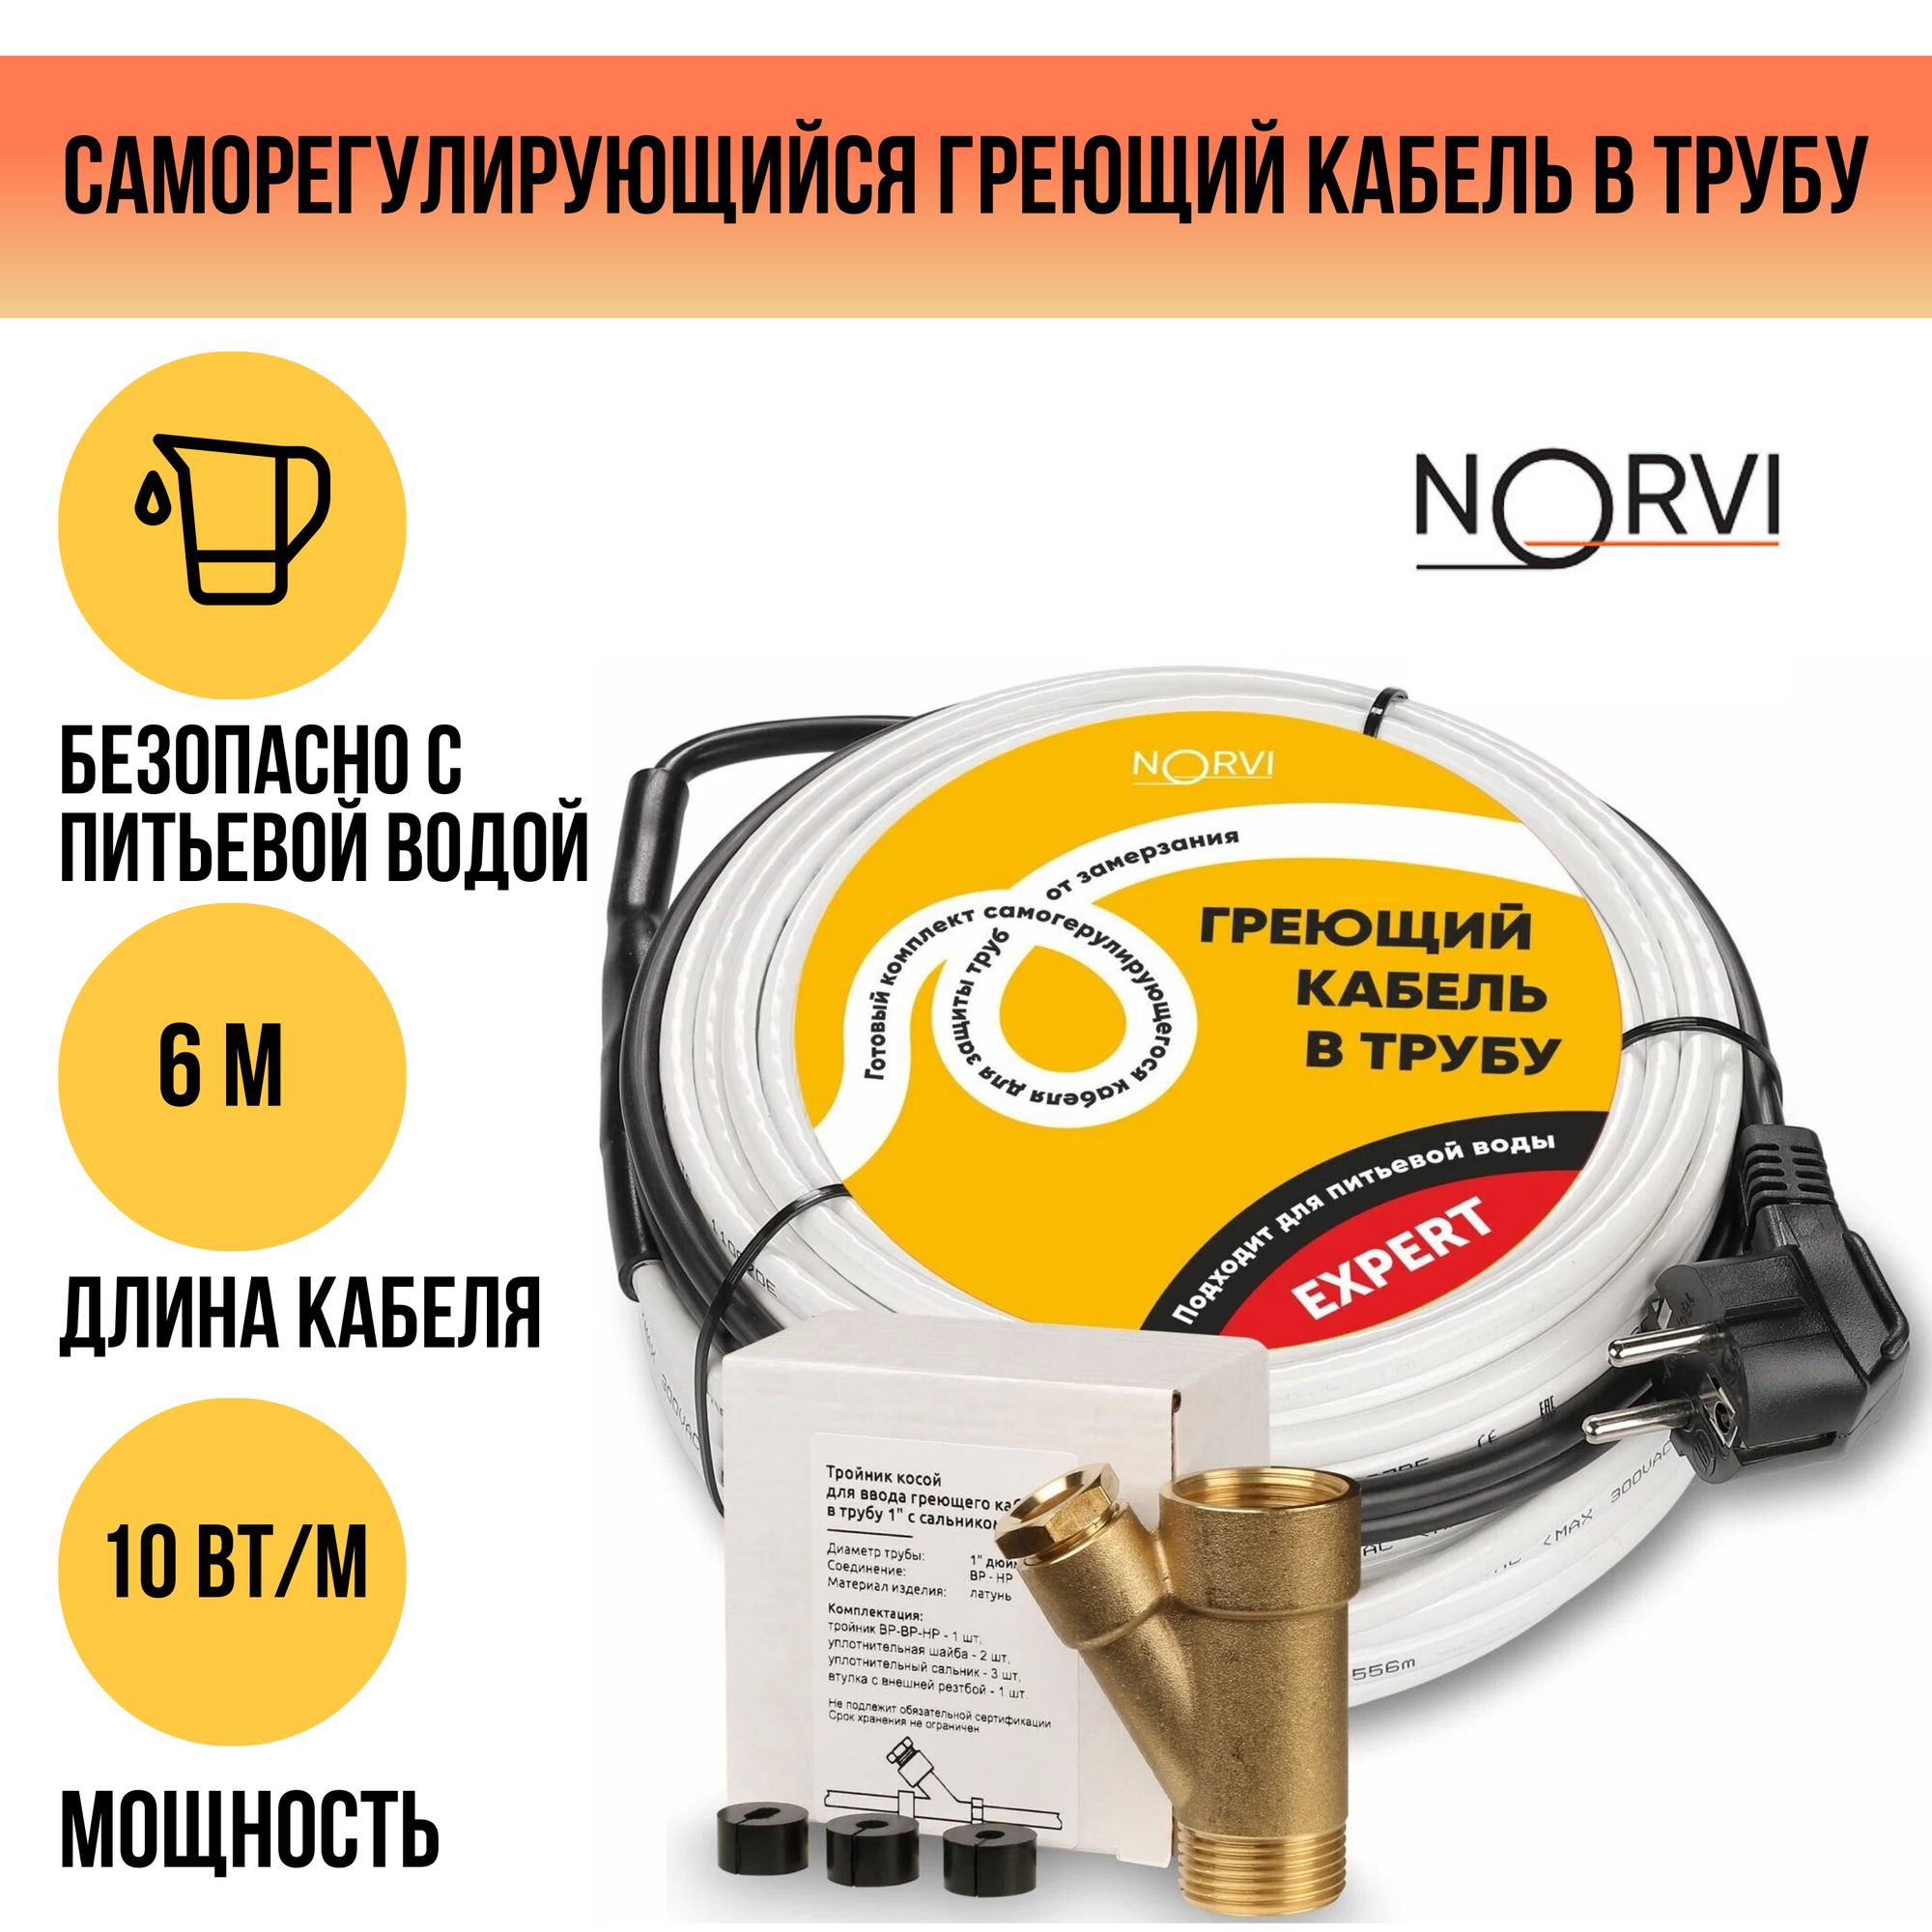 Греющий кабель NORVI EXPERT